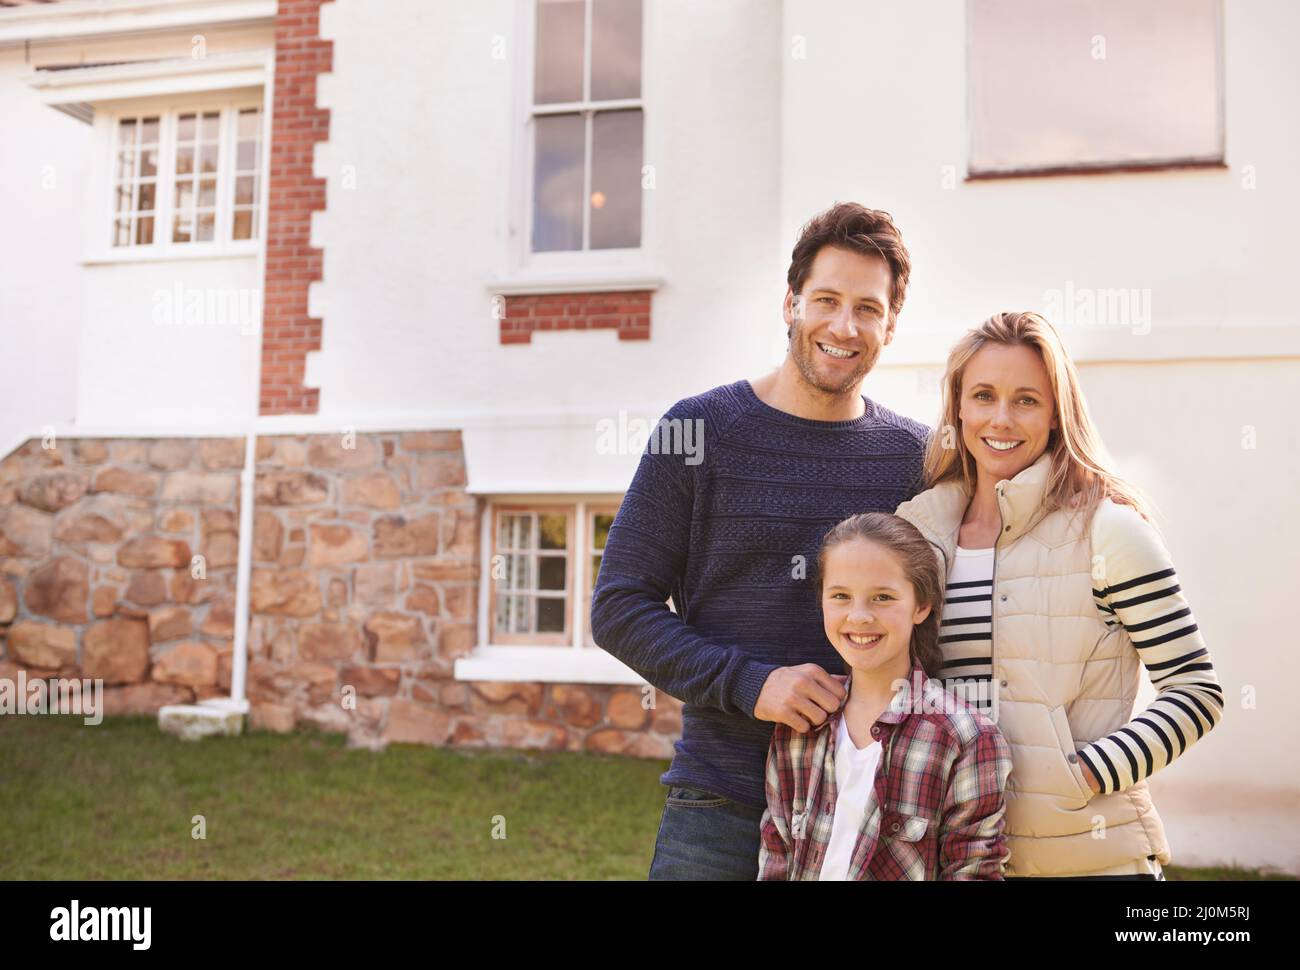 Home Sweet Home. Ein Porträt einer glücklichen Familie, die vor ihrem Haus posiert. Stockfoto